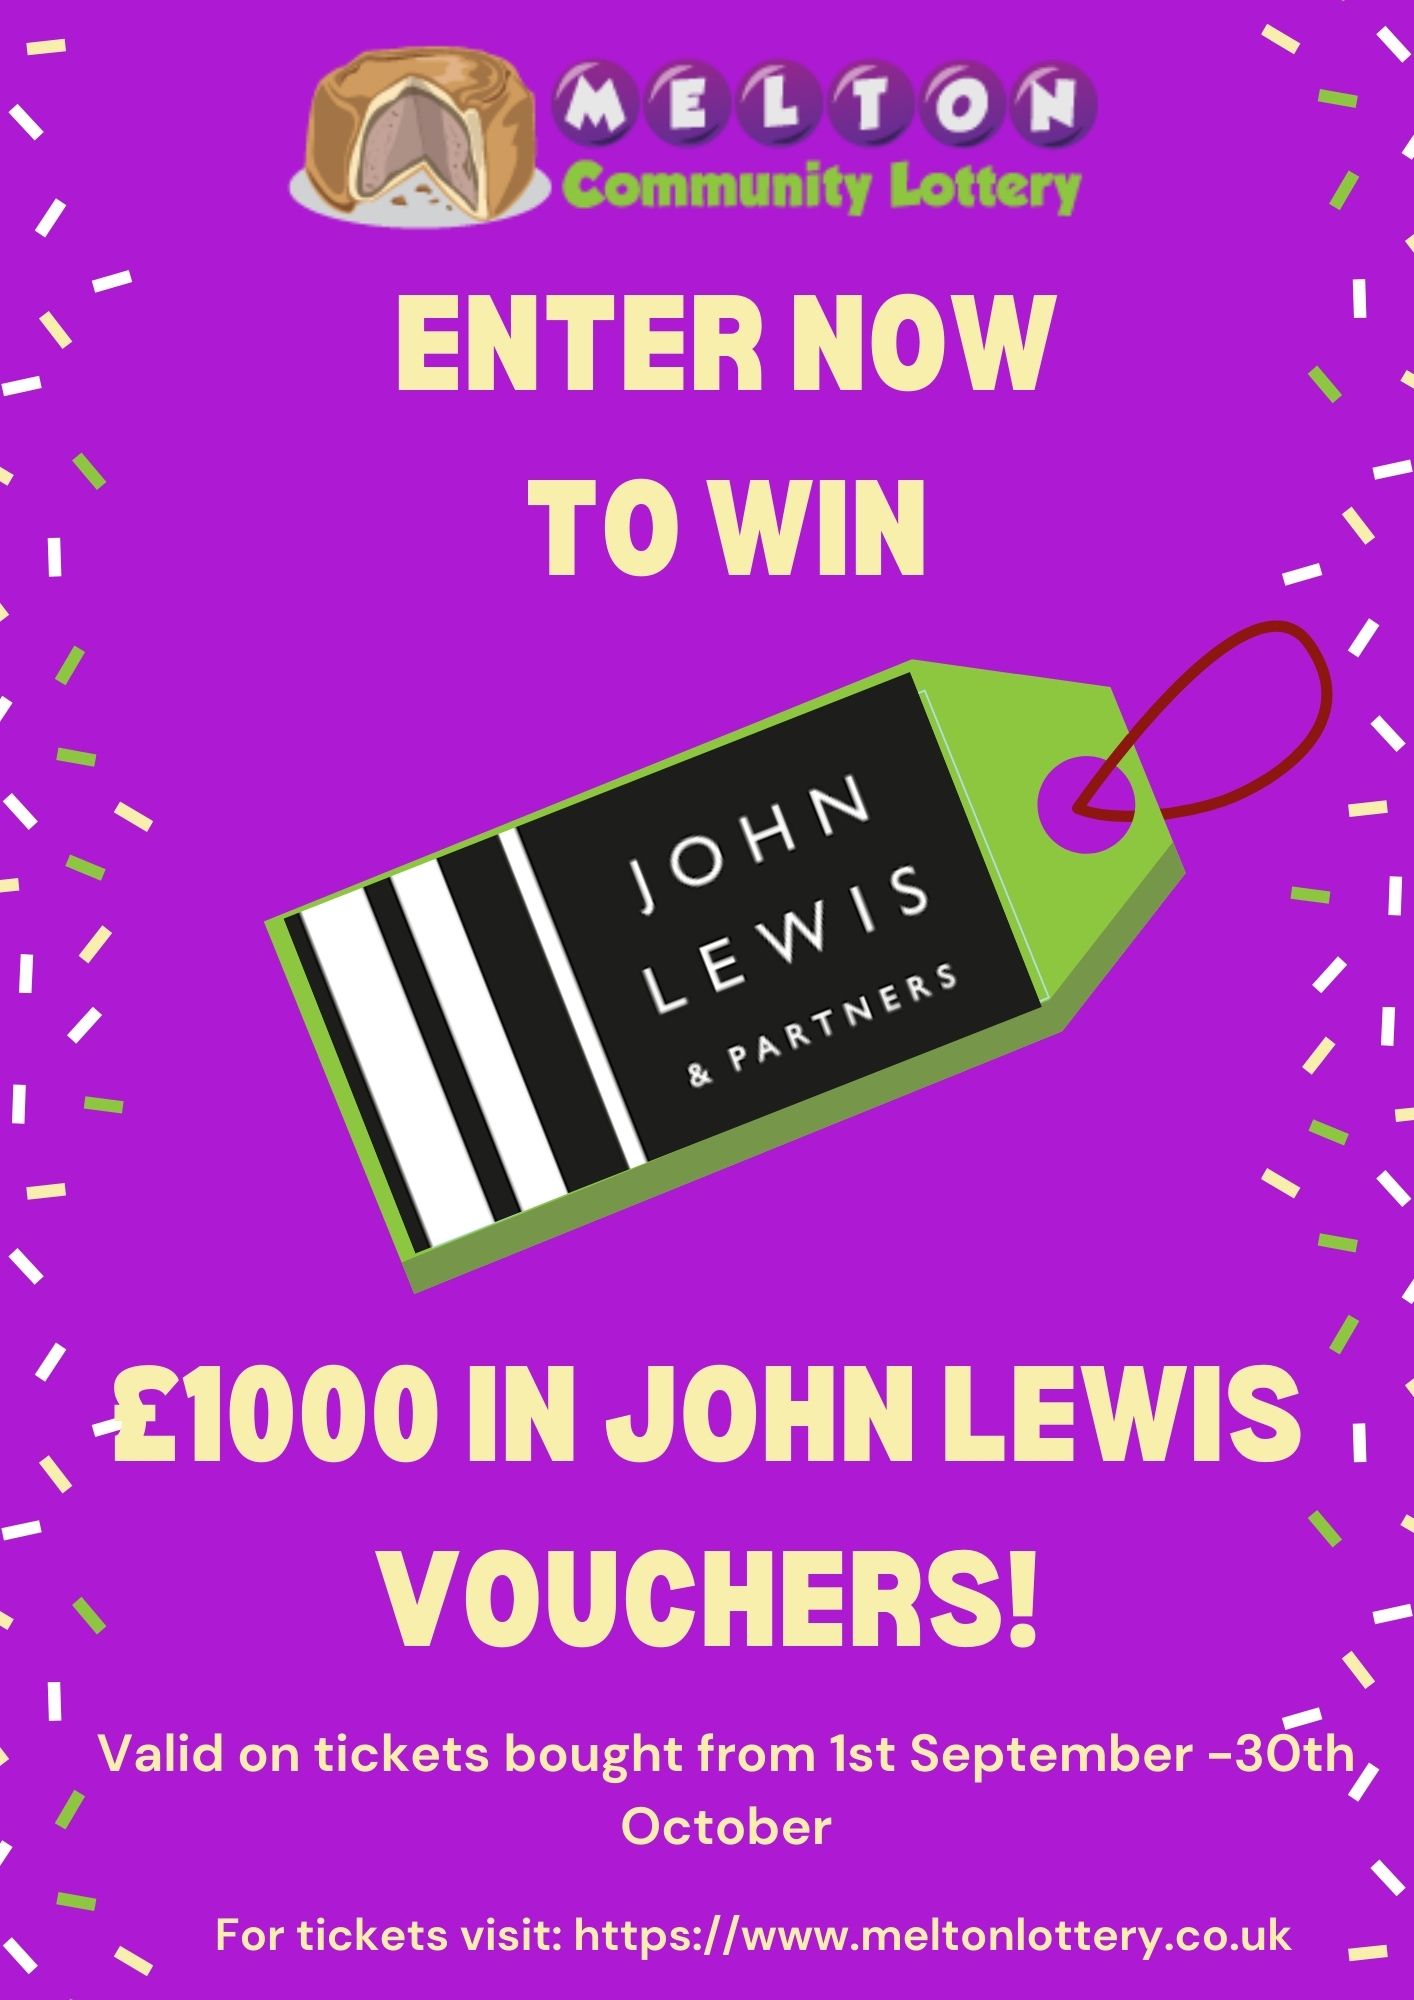 Win £1000 in John Lewis vouchers